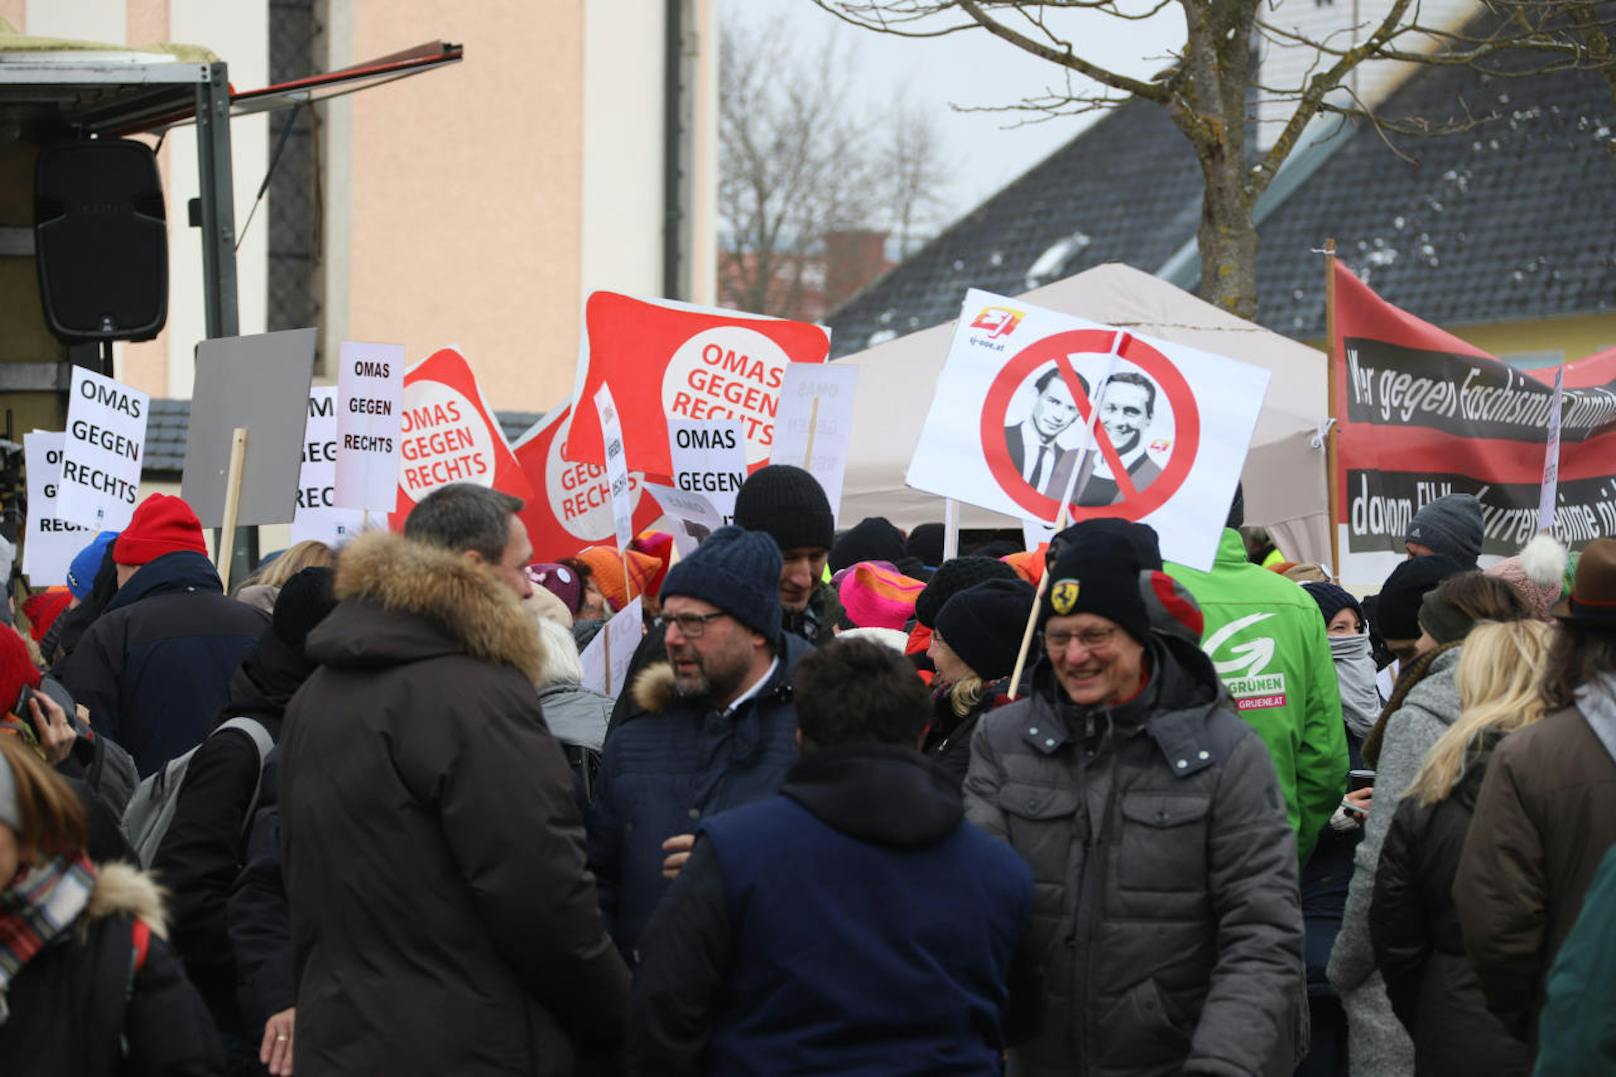 Der Protest gegen den rechten Kongress "Verteidiger Europas" zählte - laut Veranstalter - rund 450 Personen.